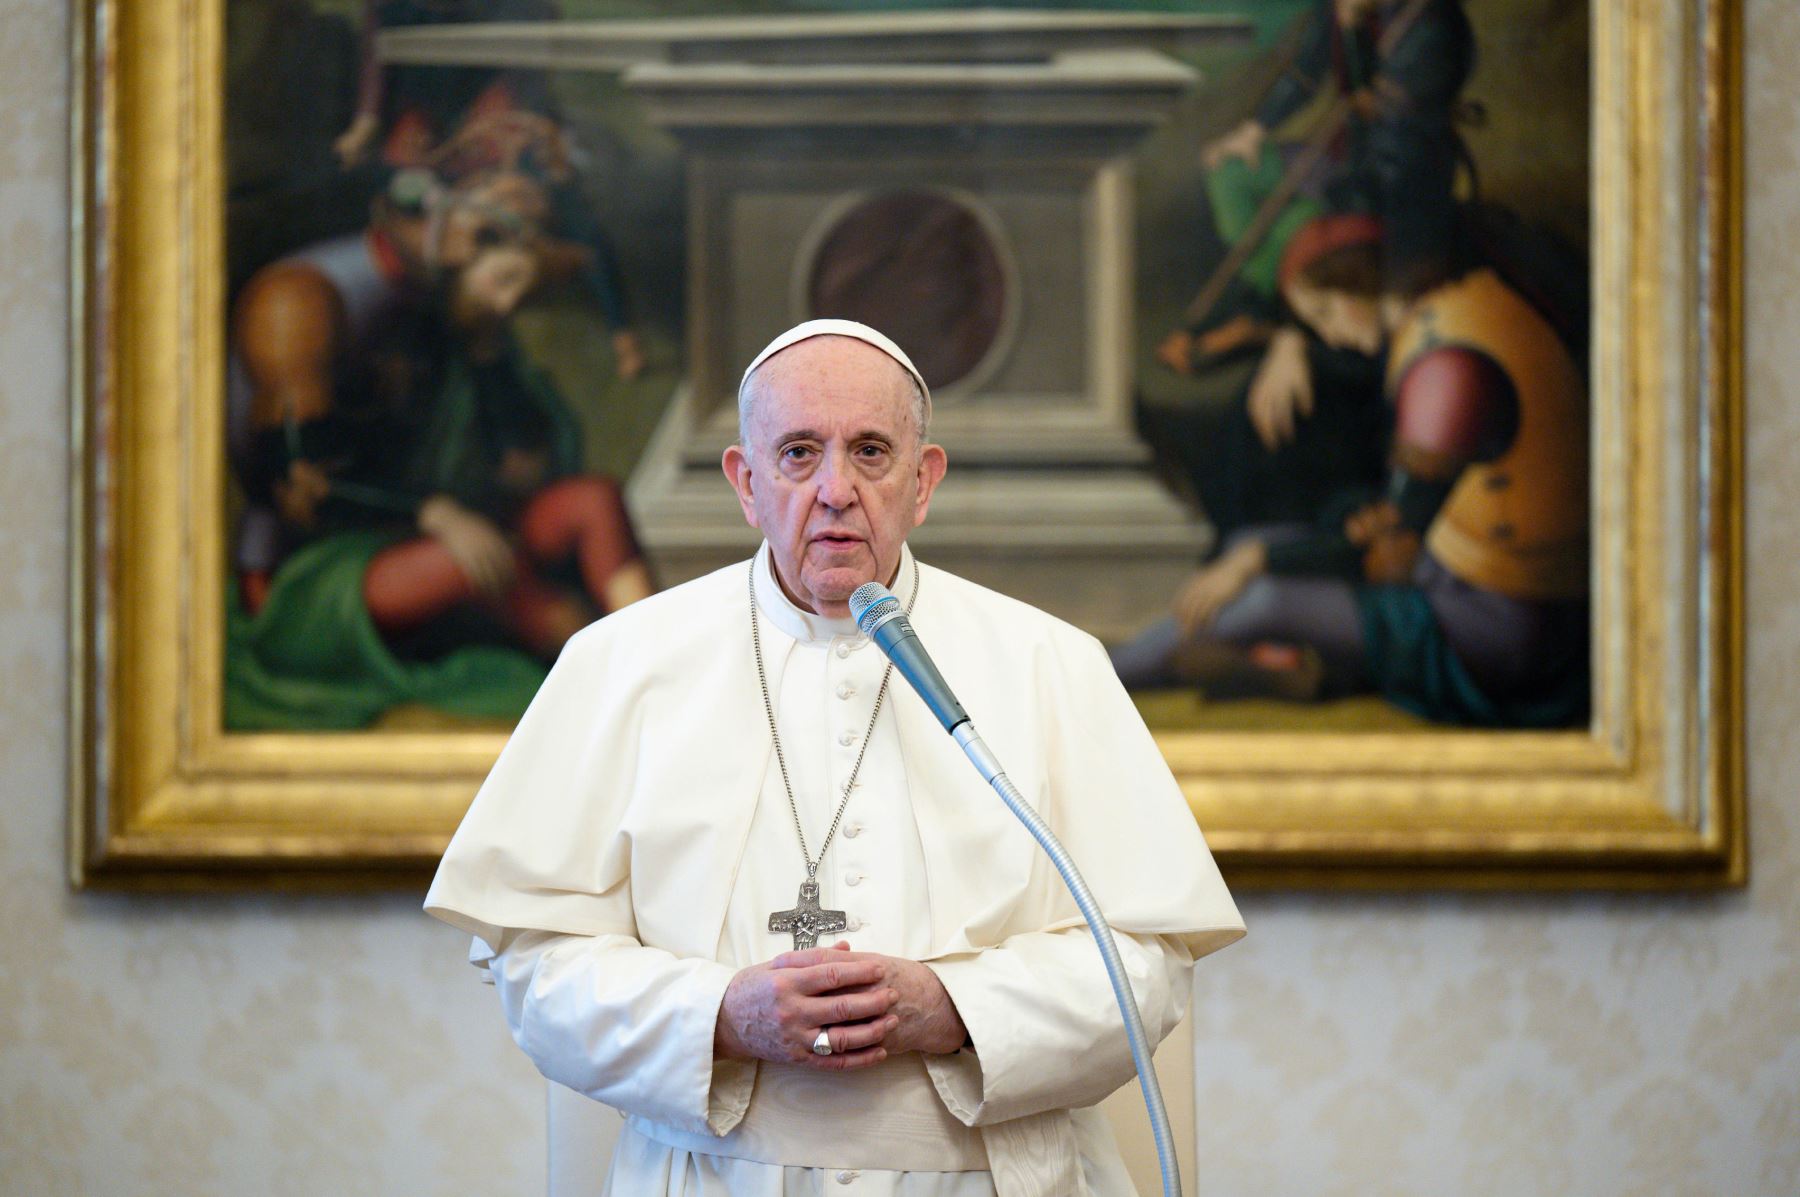 Tras el escándalo por supuestas operaciones inmobiliarias, el Papa Francisco aumentó los controles de las finanzas del Vaticano por decreto